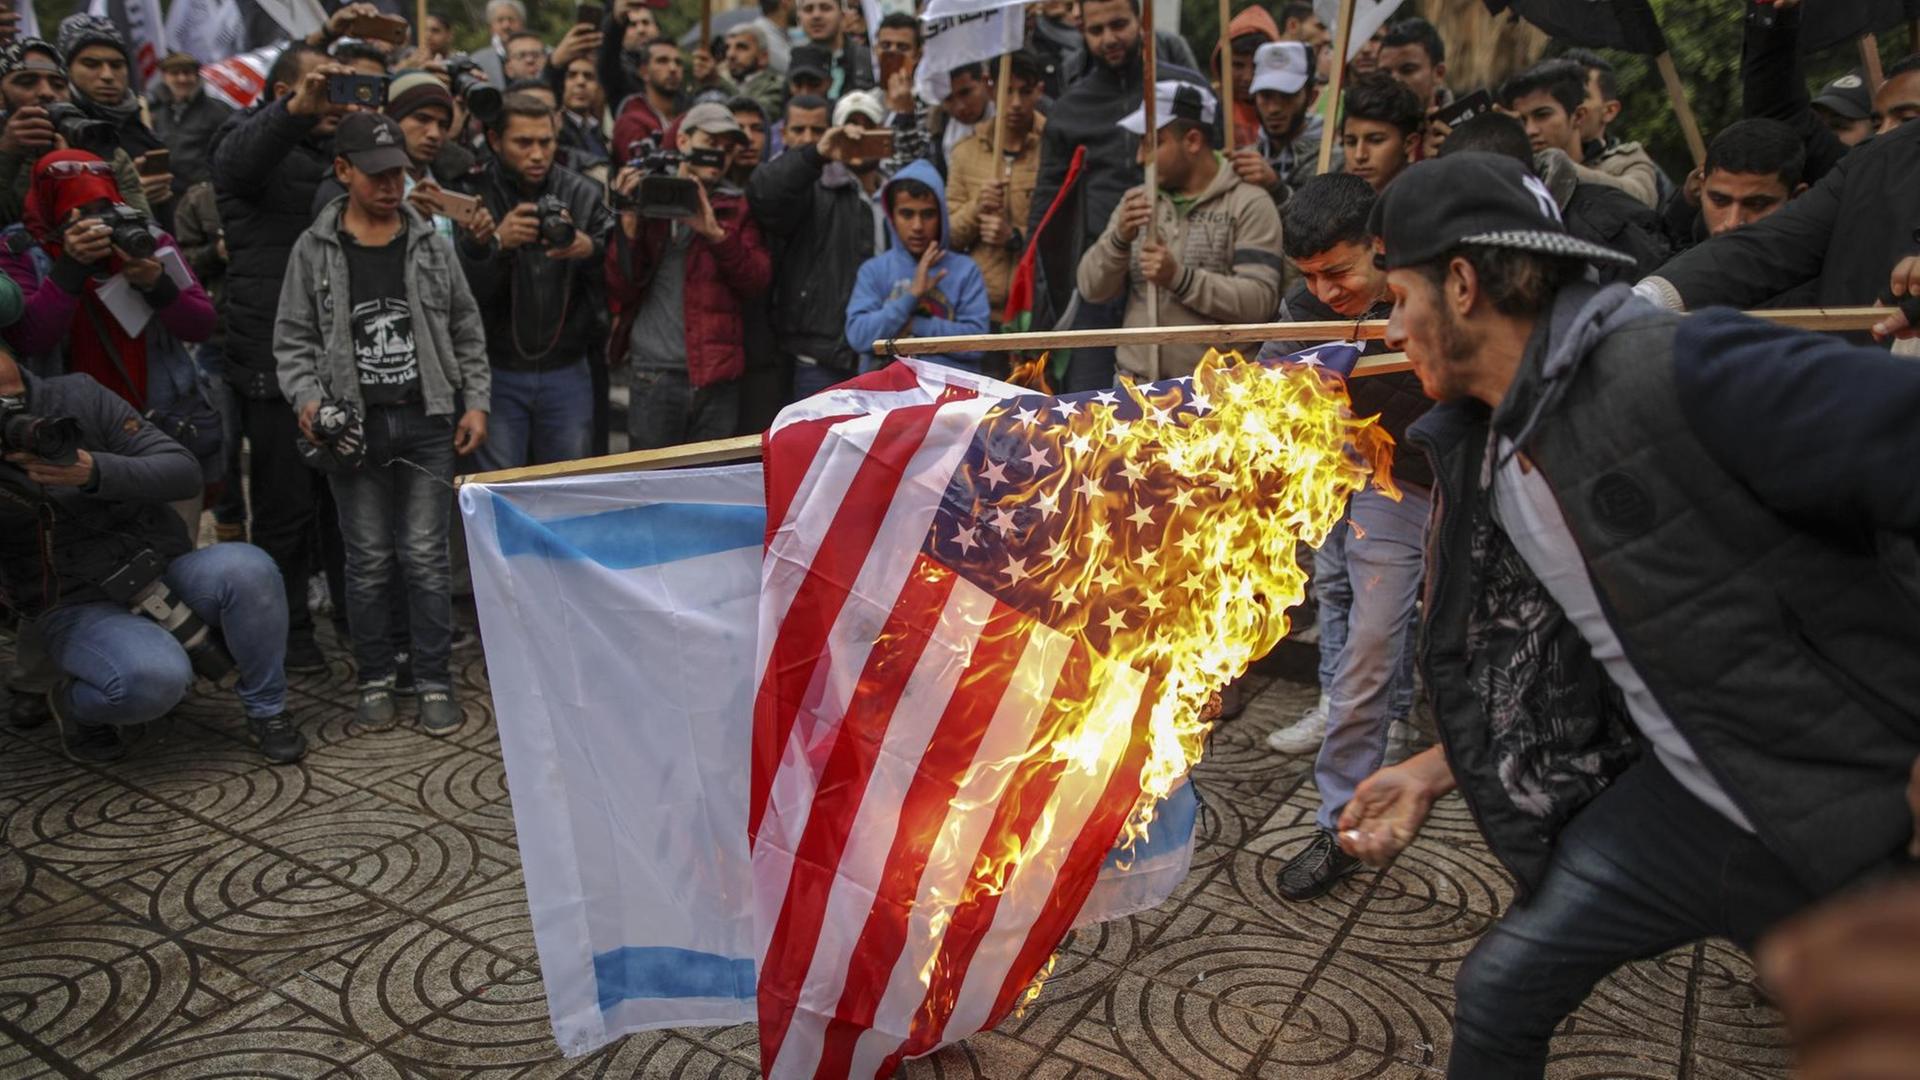 Palästinenser verbrennen am 6.12.2017 in Gaza (Palästinensische Autonomiegebiete) die amerikanische und israelische Flagge.